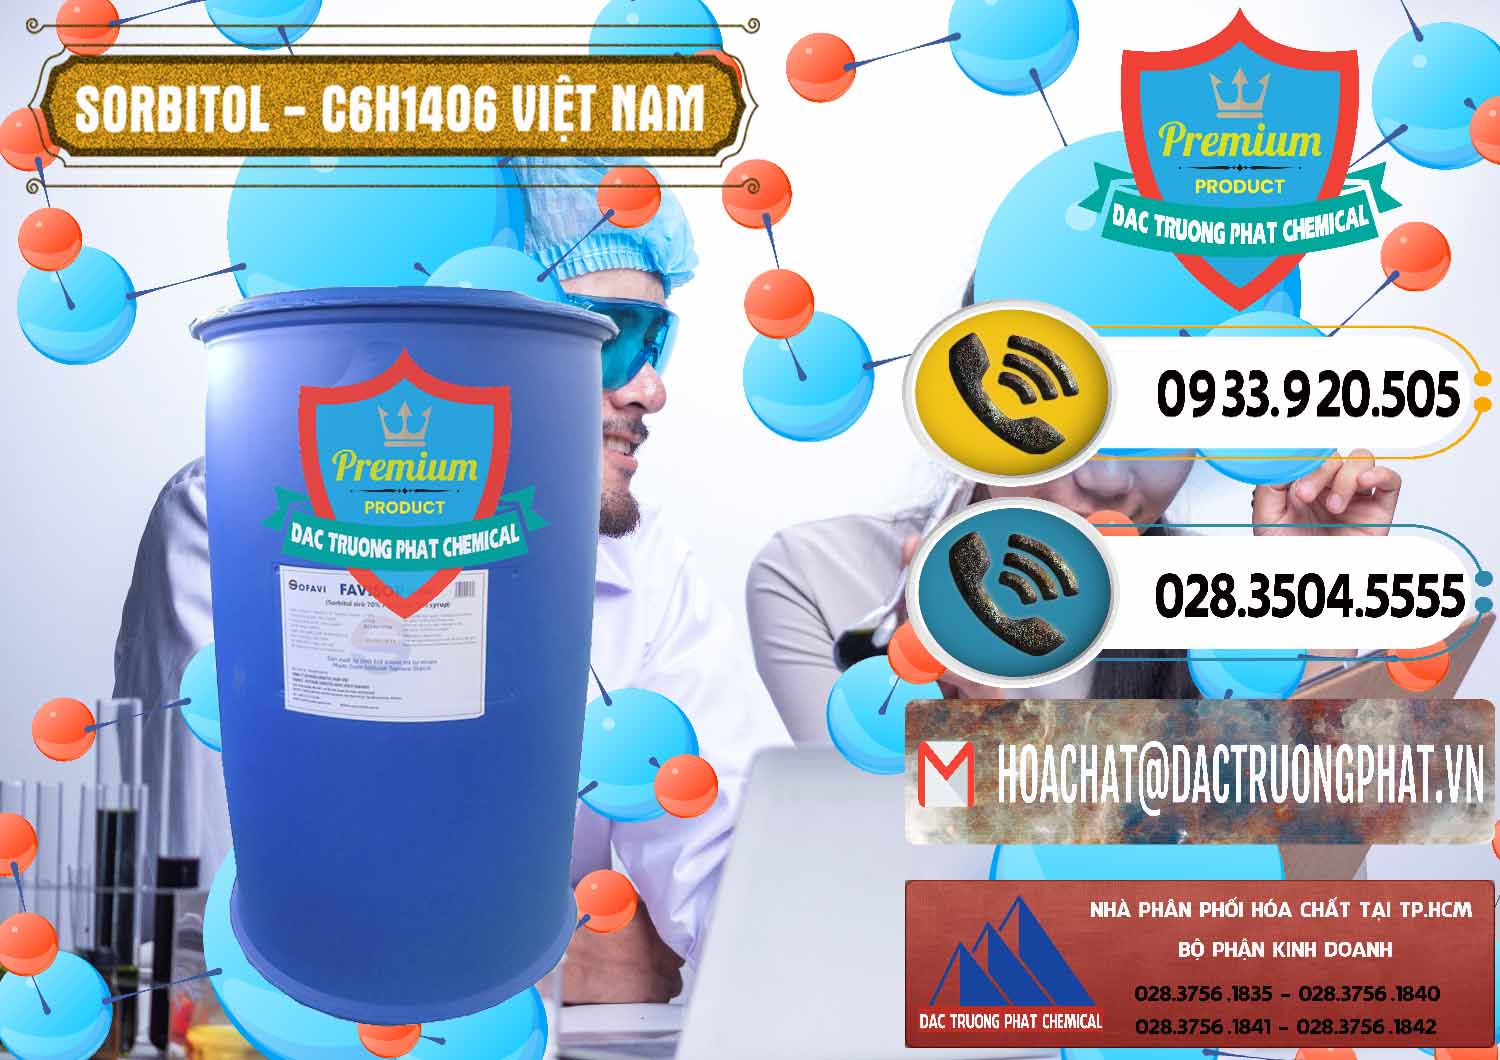 Đơn vị chuyên bán & cung ứng Sorbitol - C6H14O6 Lỏng 70% Food Grade Việt Nam - 0438 - Công ty bán & phân phối hóa chất tại TP.HCM - hoachatdetnhuom.vn